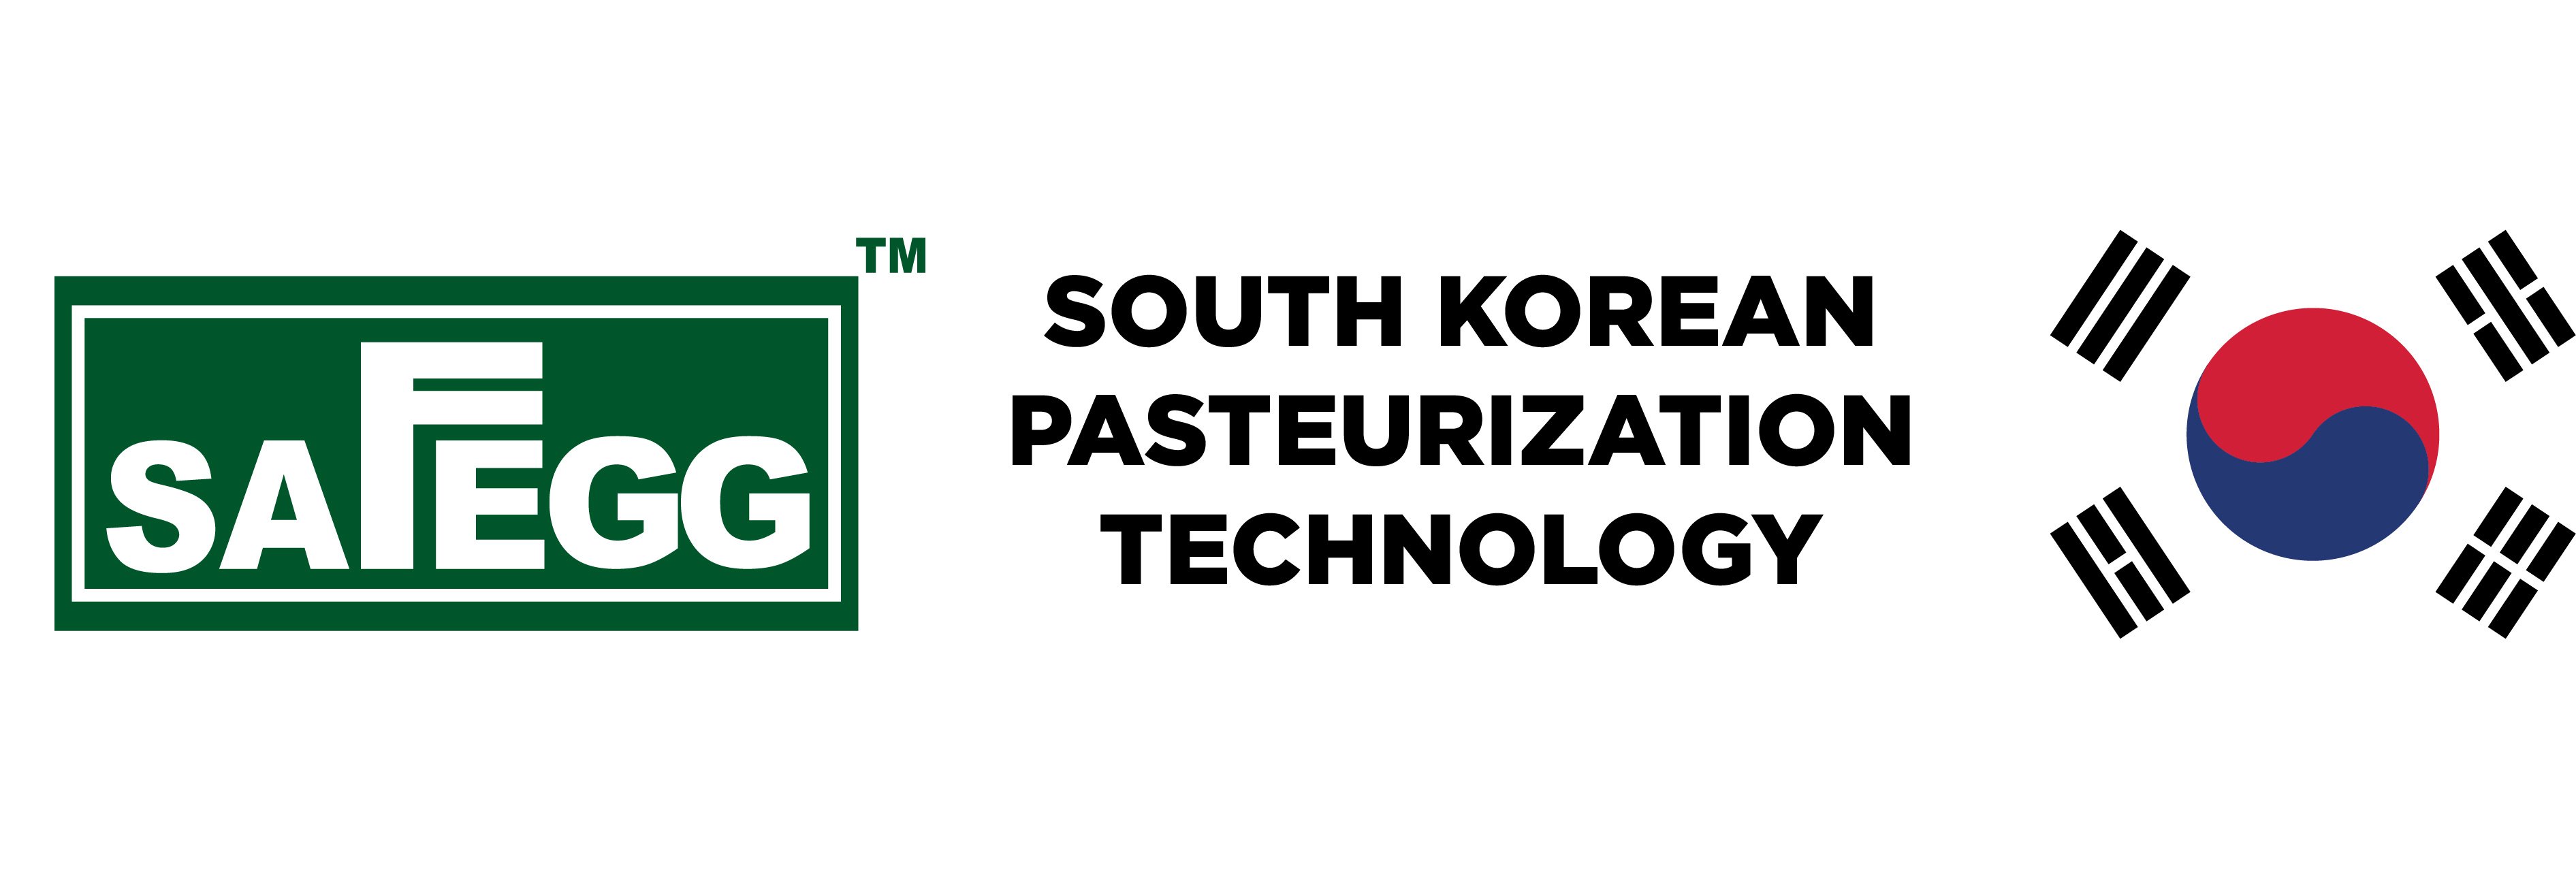 Safegg Korean Pasteurization Tech 